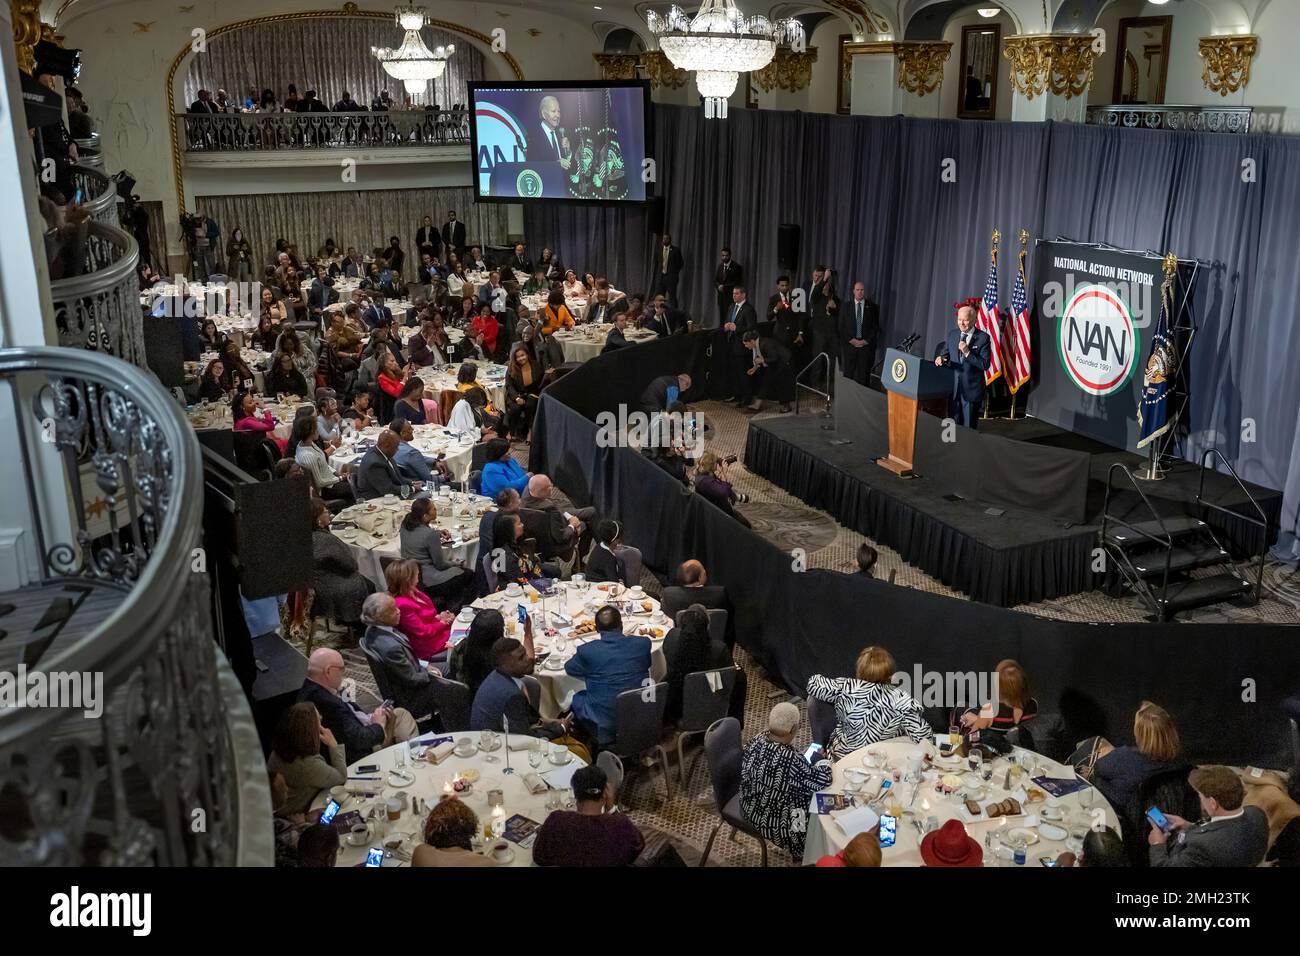 Le président Joe Biden prononce un discours au Dr Martin Luther King Jr. Du National action Network Petit déjeuner, lundi, 16 janvier 2023, à l'hôtel Mayflower de Washington, D.C. (Photo officielle de la Maison Blanche par Adam Schultz) Banque D'Images